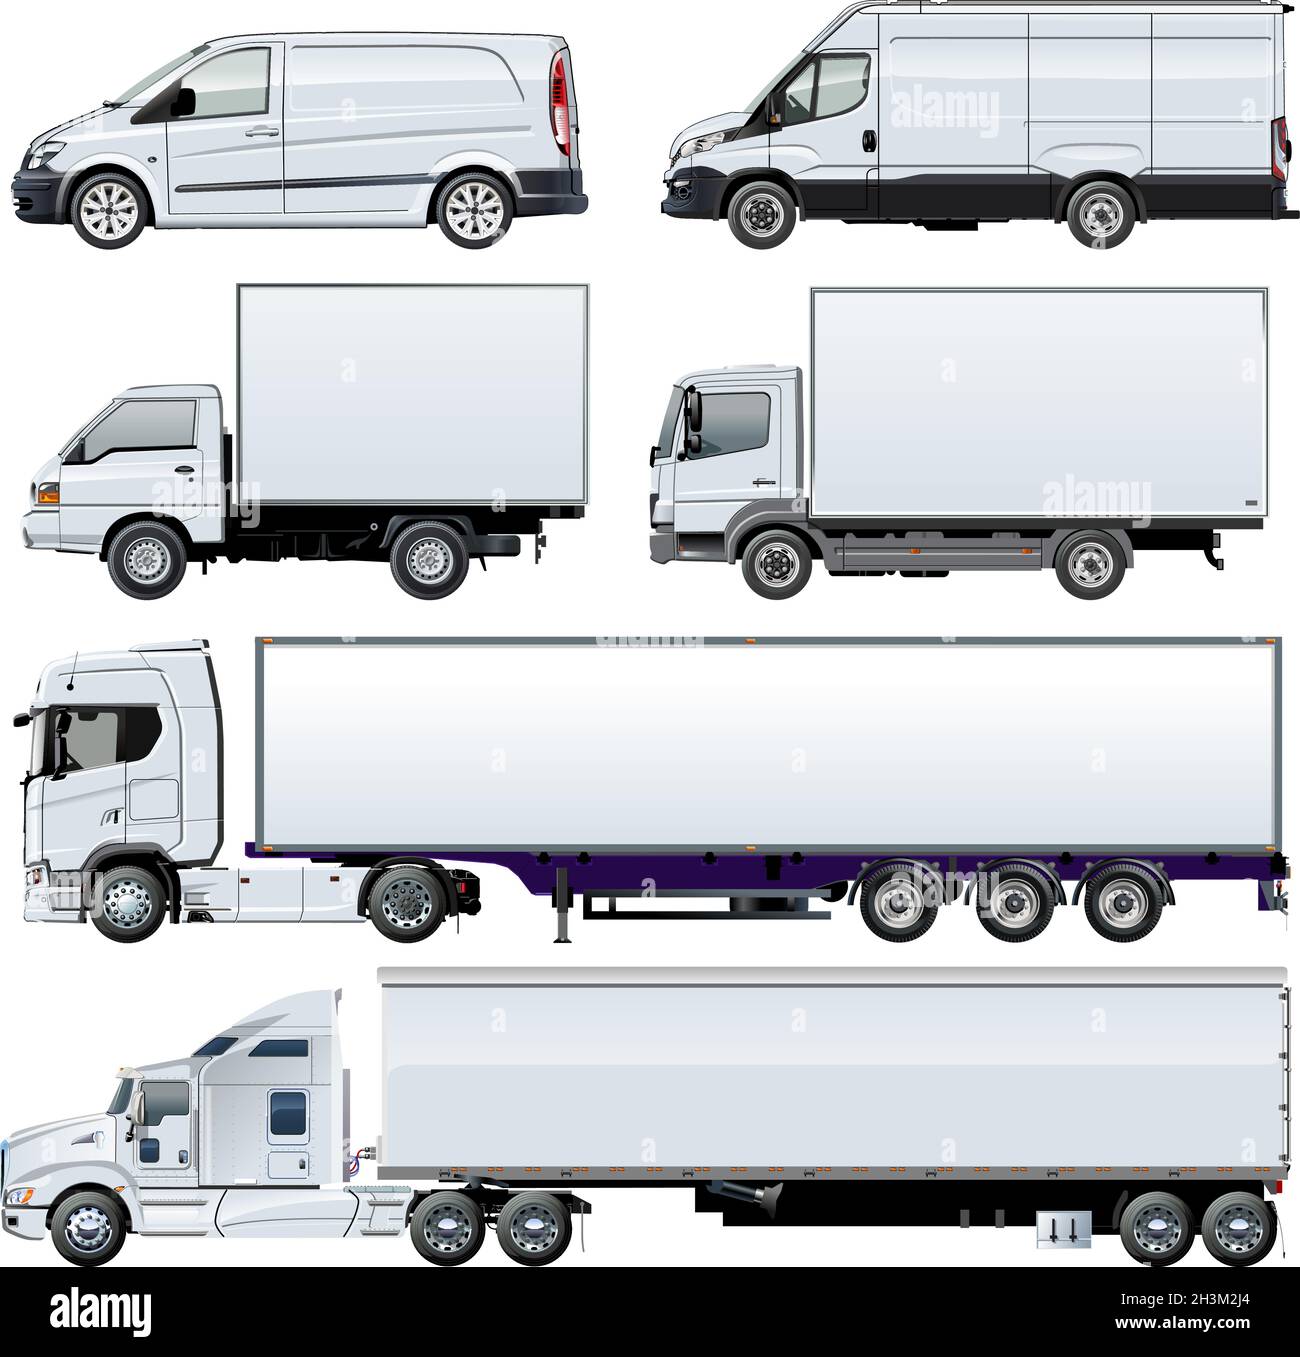 Modèle Vector Trucks pour l'identité de la marque.EPS-10 disponible séparé par des groupes et des calques avec effets de transparence pour repeindre en un clic. Illustration de Vecteur